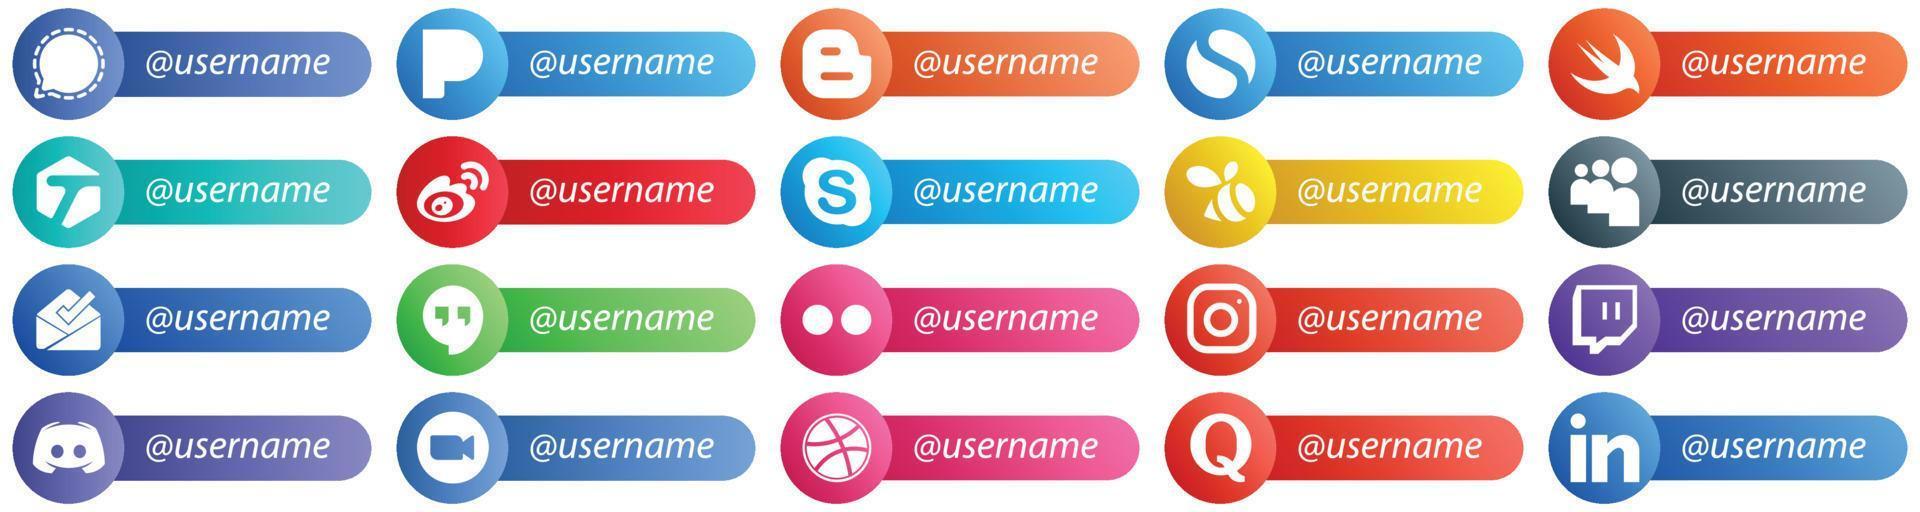 20 estilo de tarjeta con estilo sígueme íconos de redes sociales como la bandeja de entrada. enjambre. iconos etiquetados y de chat. totalmente editable y versátil vector